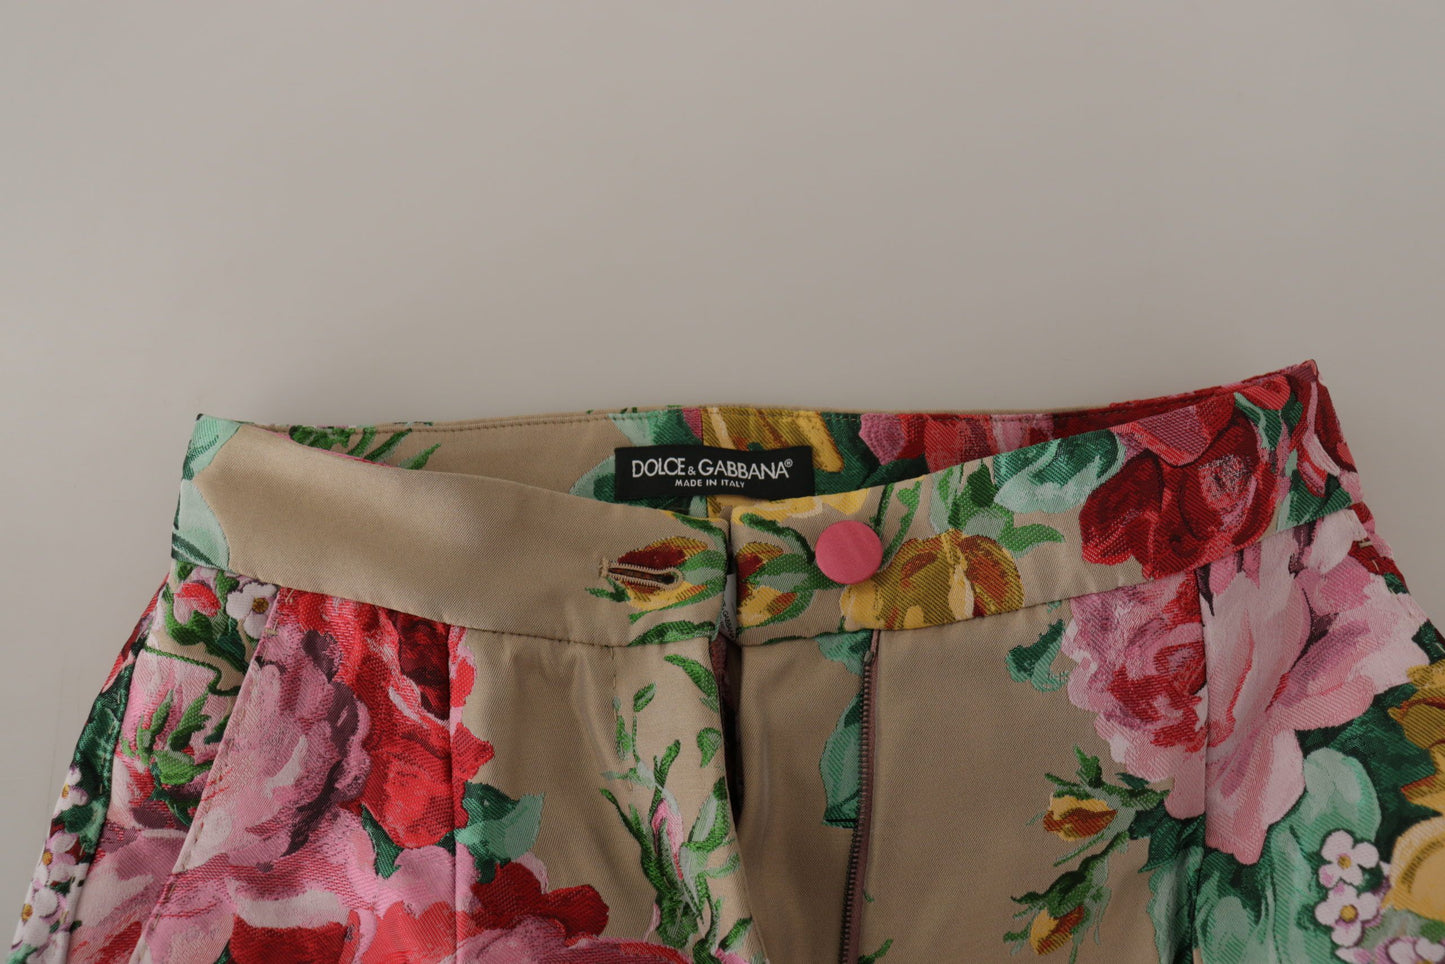 Floral High-Waist Dress Pants